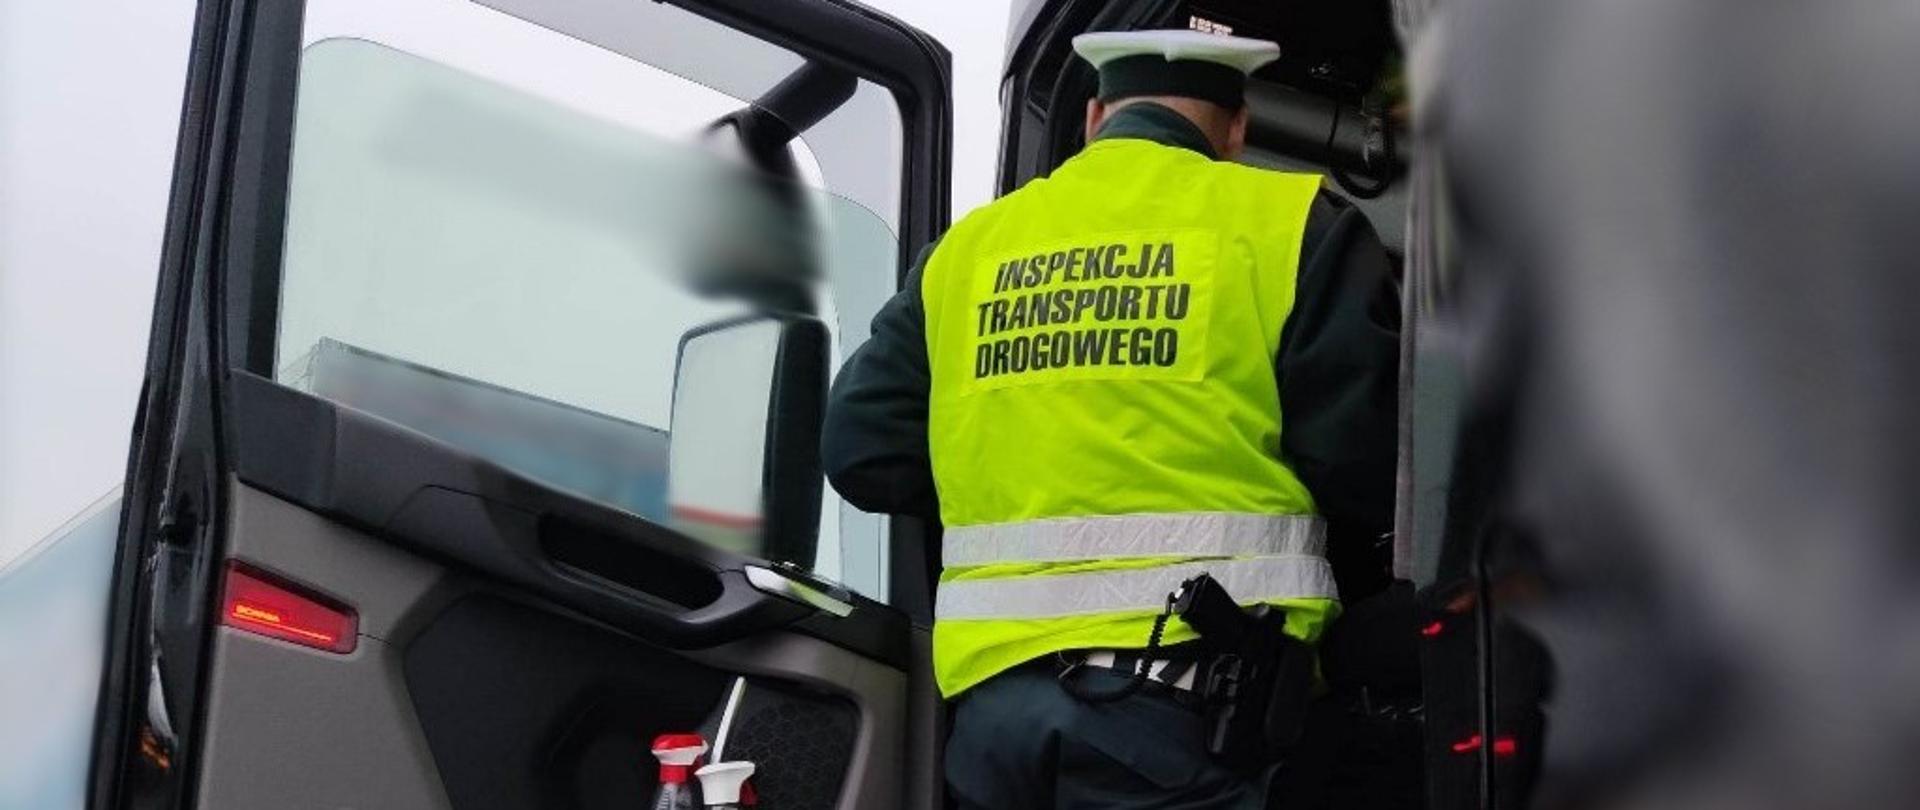 Umundurowany funkcjonariusze lubuskiej Inspekcji Transportu Drogowego stoi w wejściu do kabiny samochodu ciężarowego i pobiera dokumenty od kierowcy.